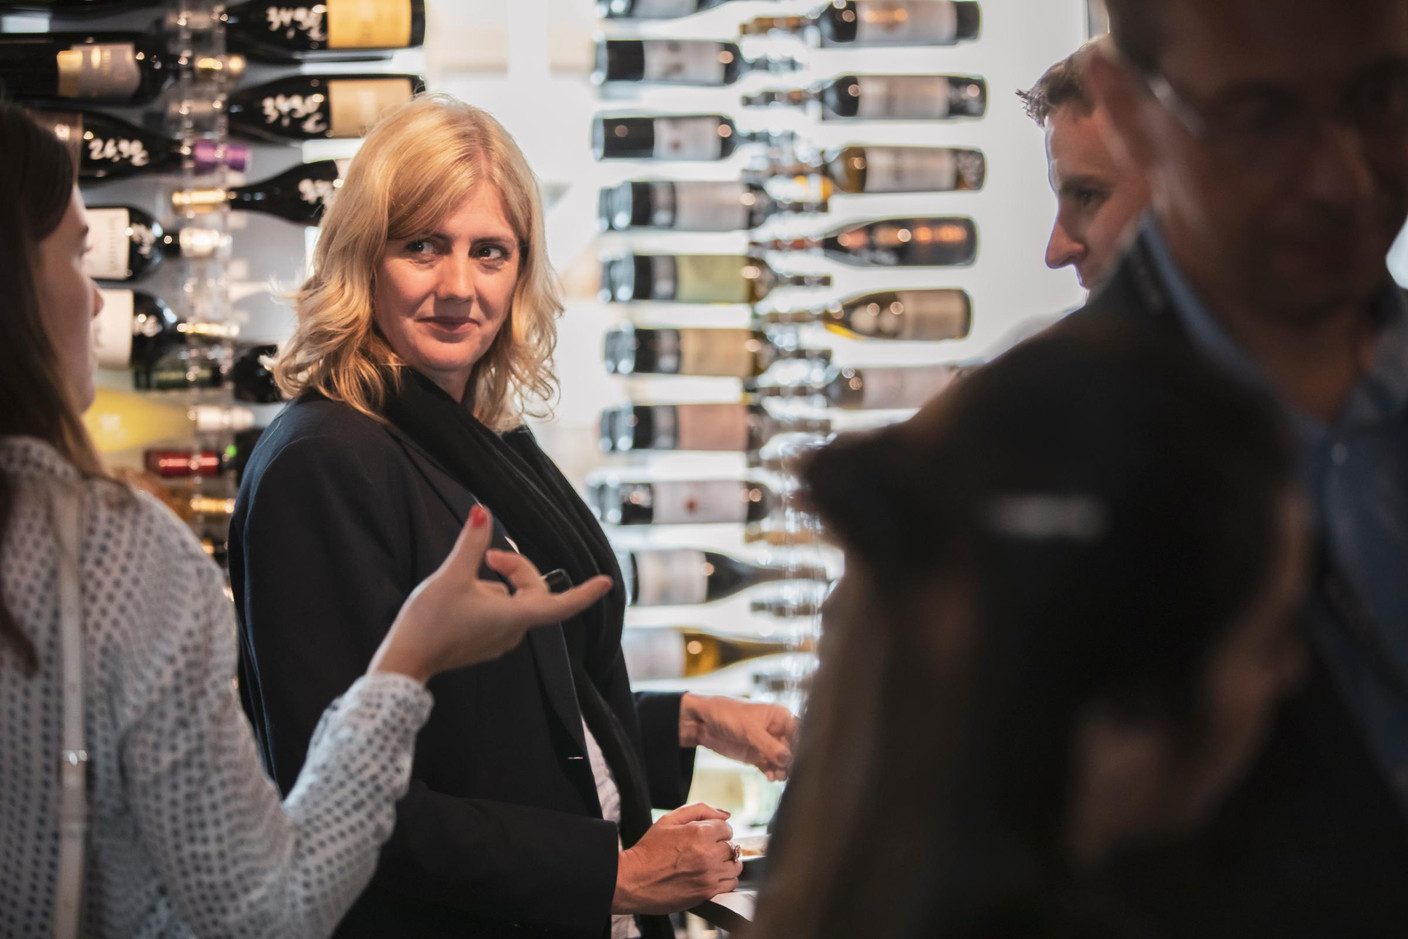 Let's Taste - Surprises vinicoles - 29.05.2019 (Photo: Jan Hanrion/Maison Moderne)